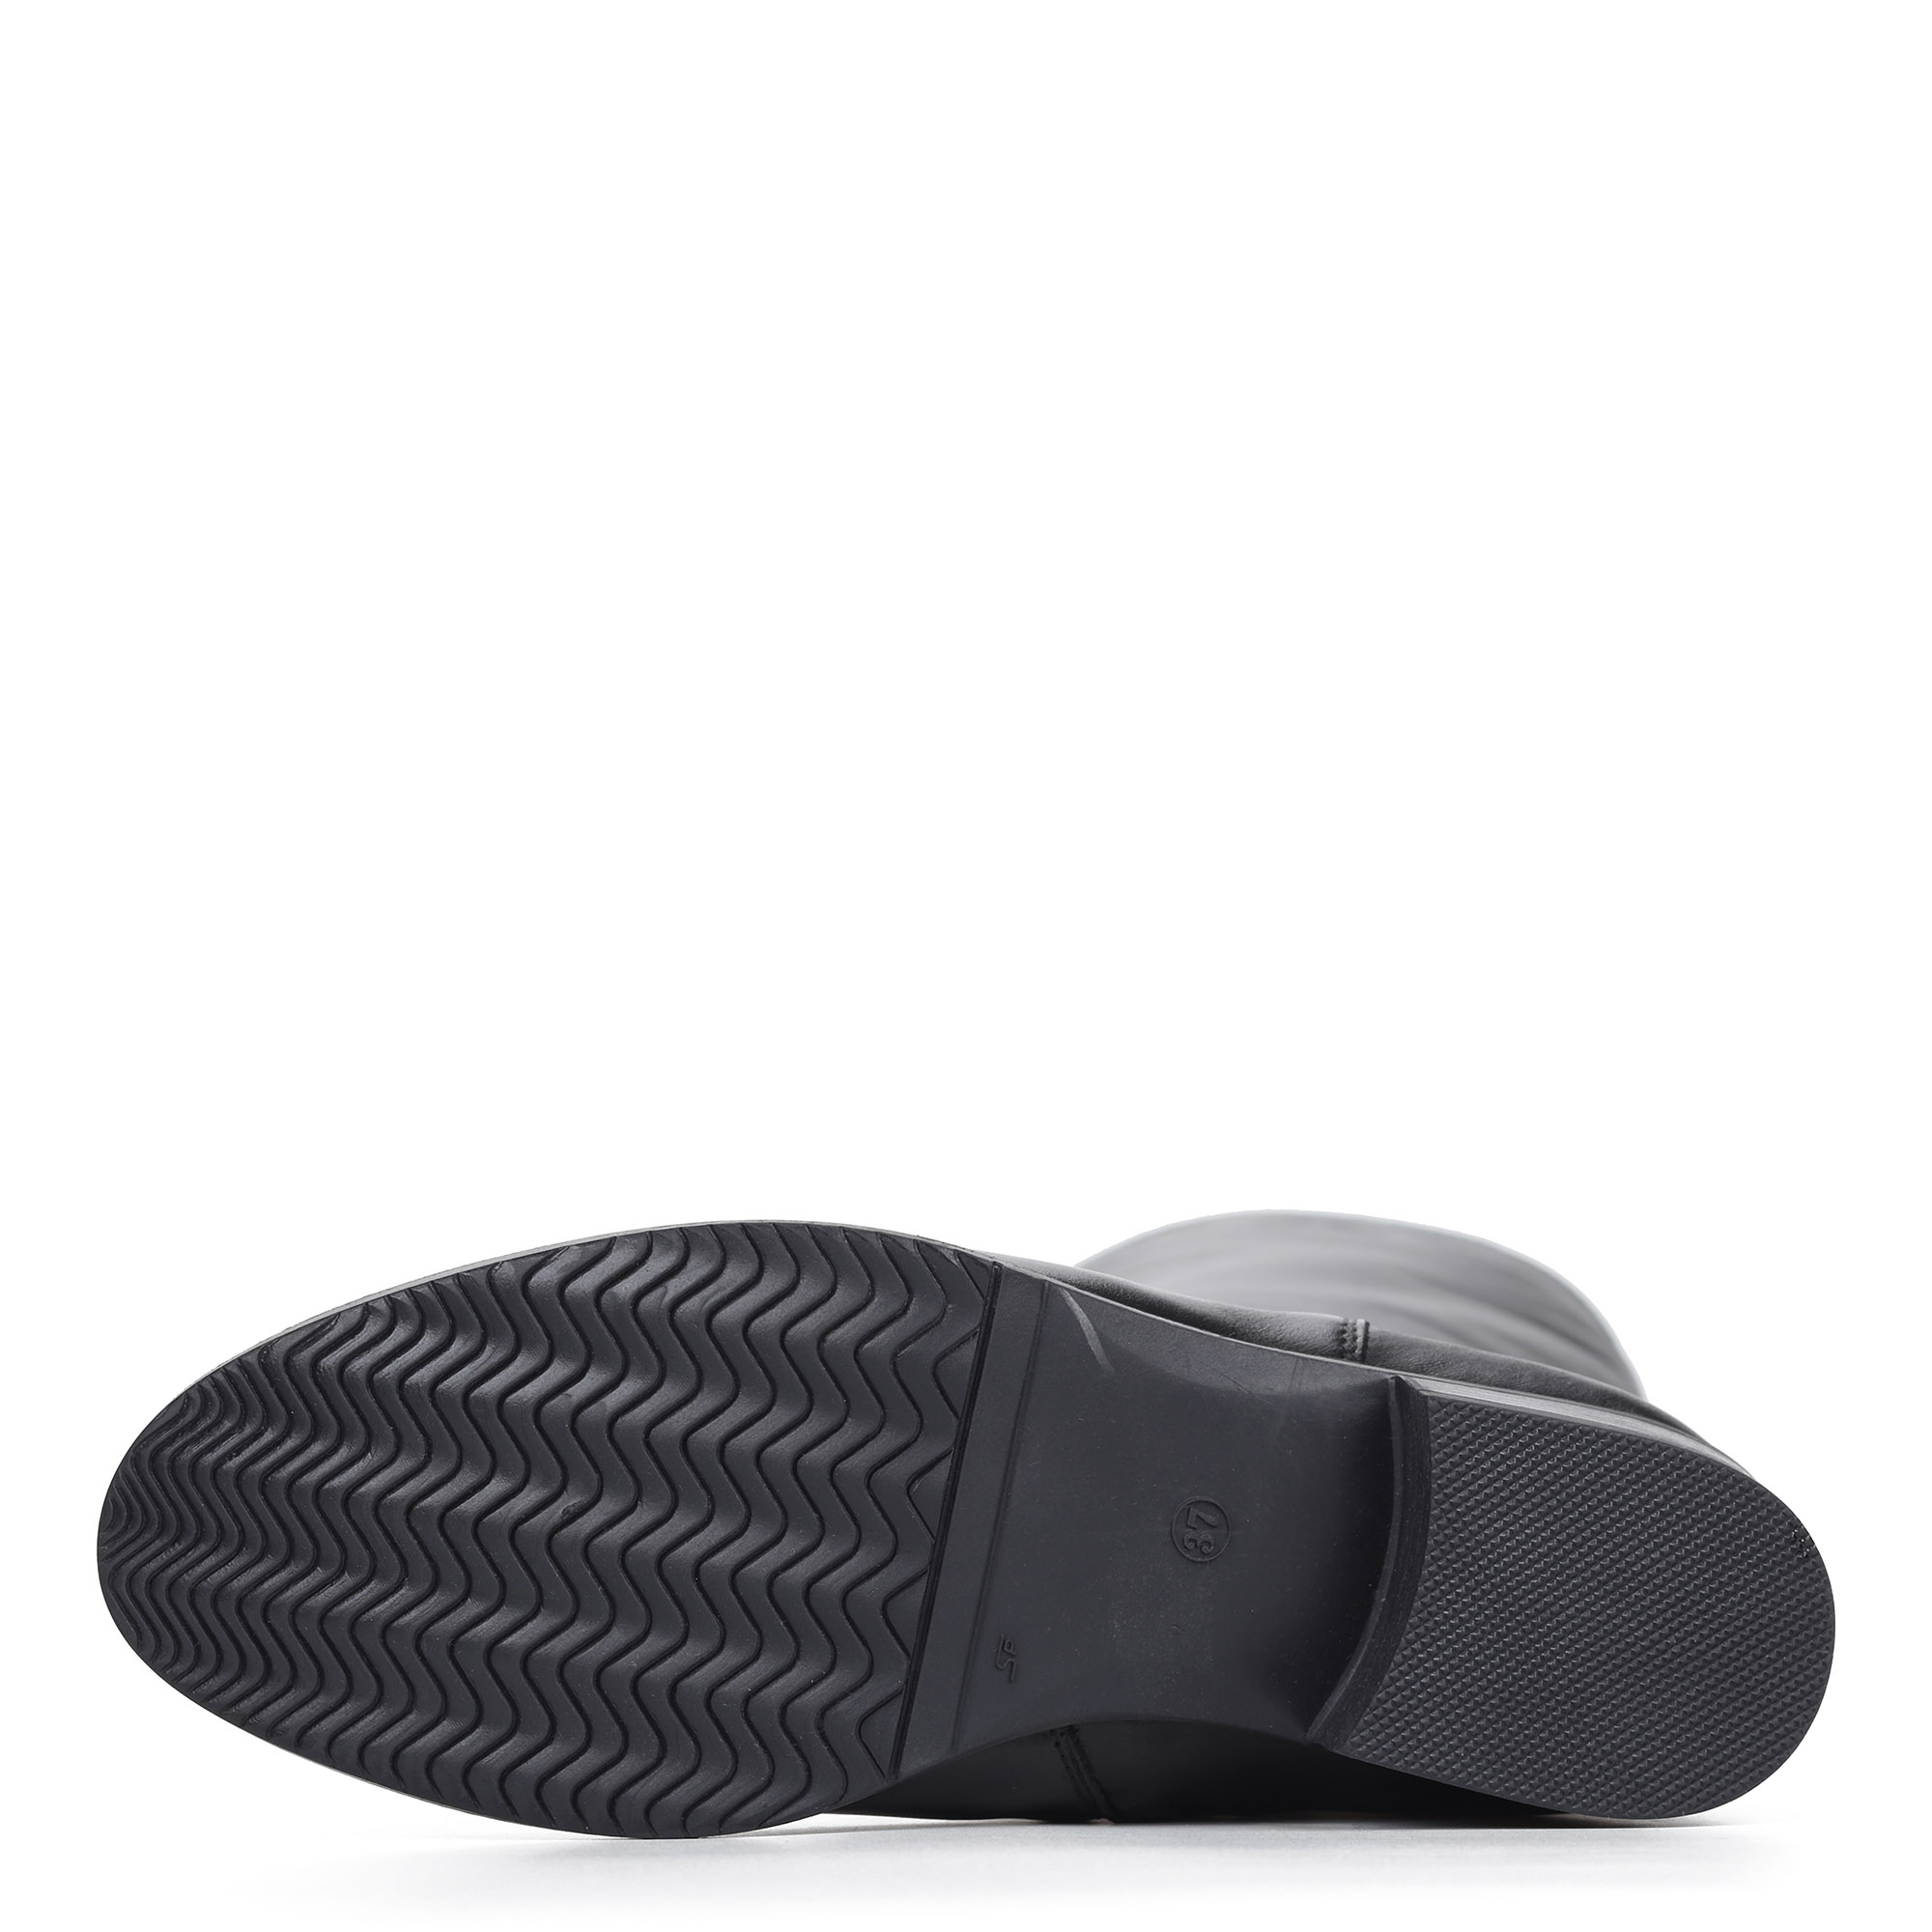 Сапоги на низком каблуке из кожи Respect, размер 39, цвет черный - фото 9